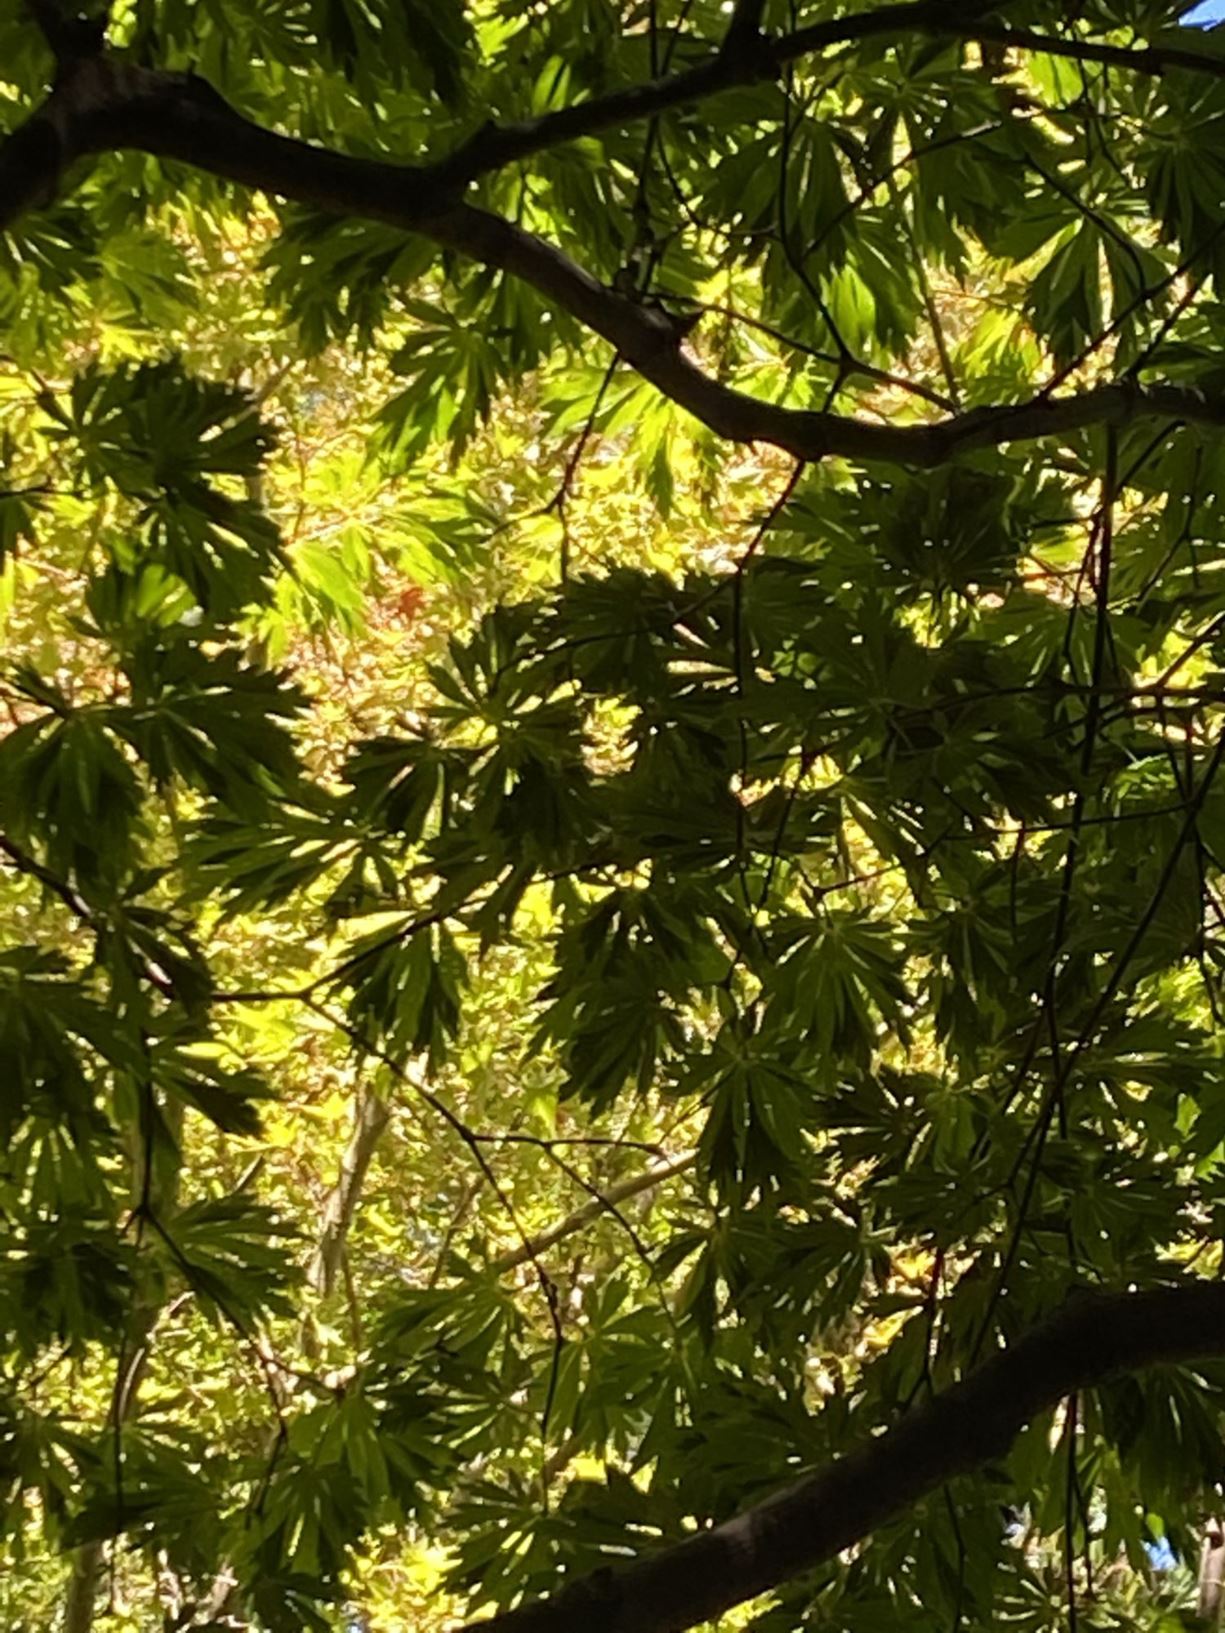 Acer japonicum 'Aconitifolium' - fullmoon maple